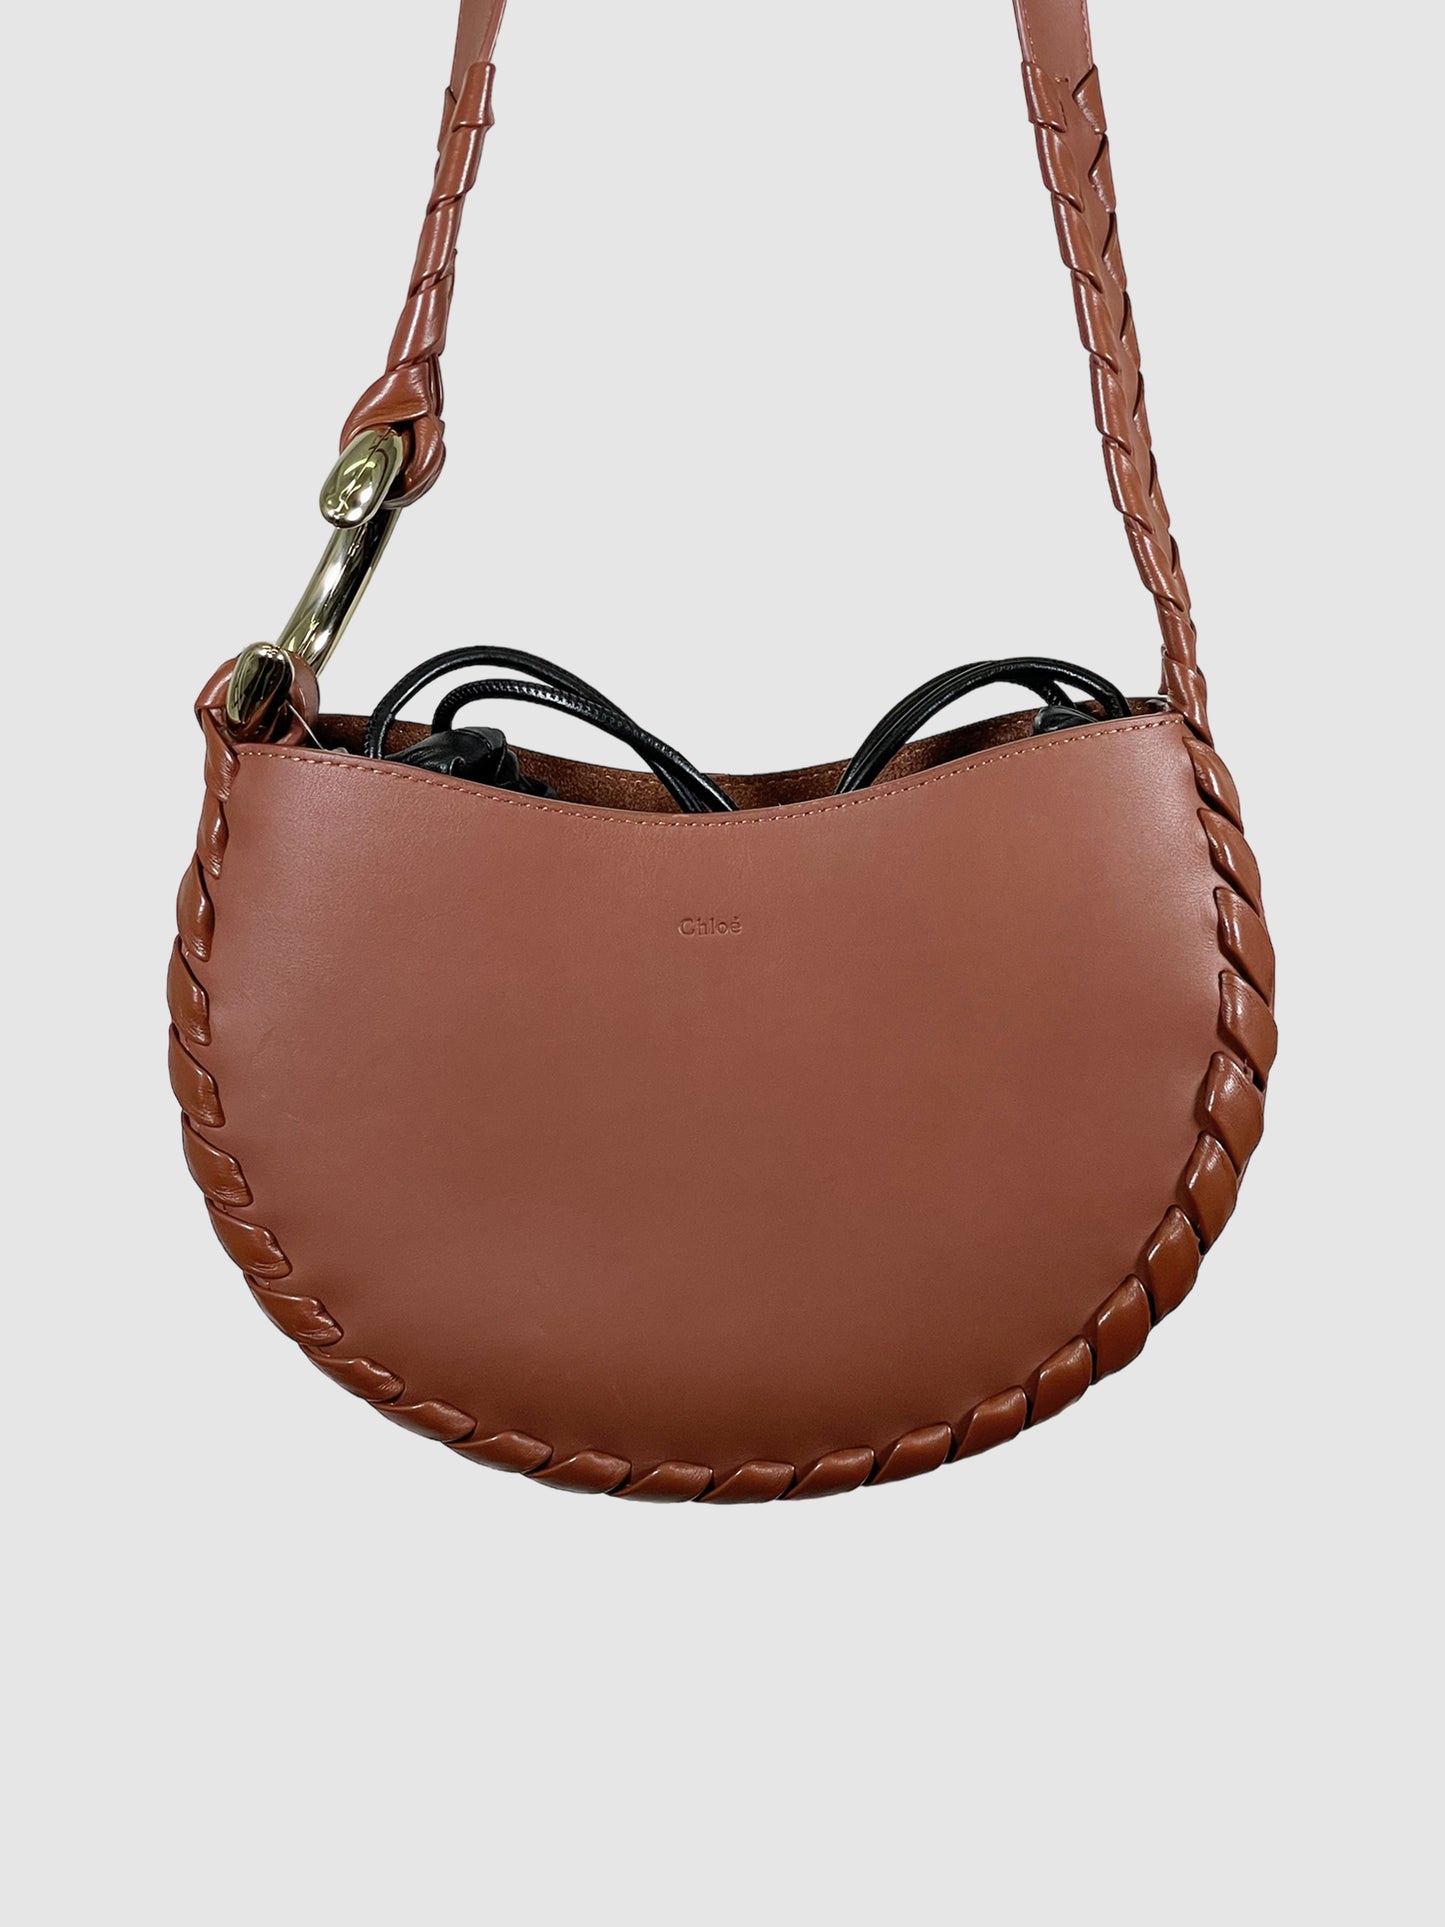 Chloé Leather Mate Shoulder Bag